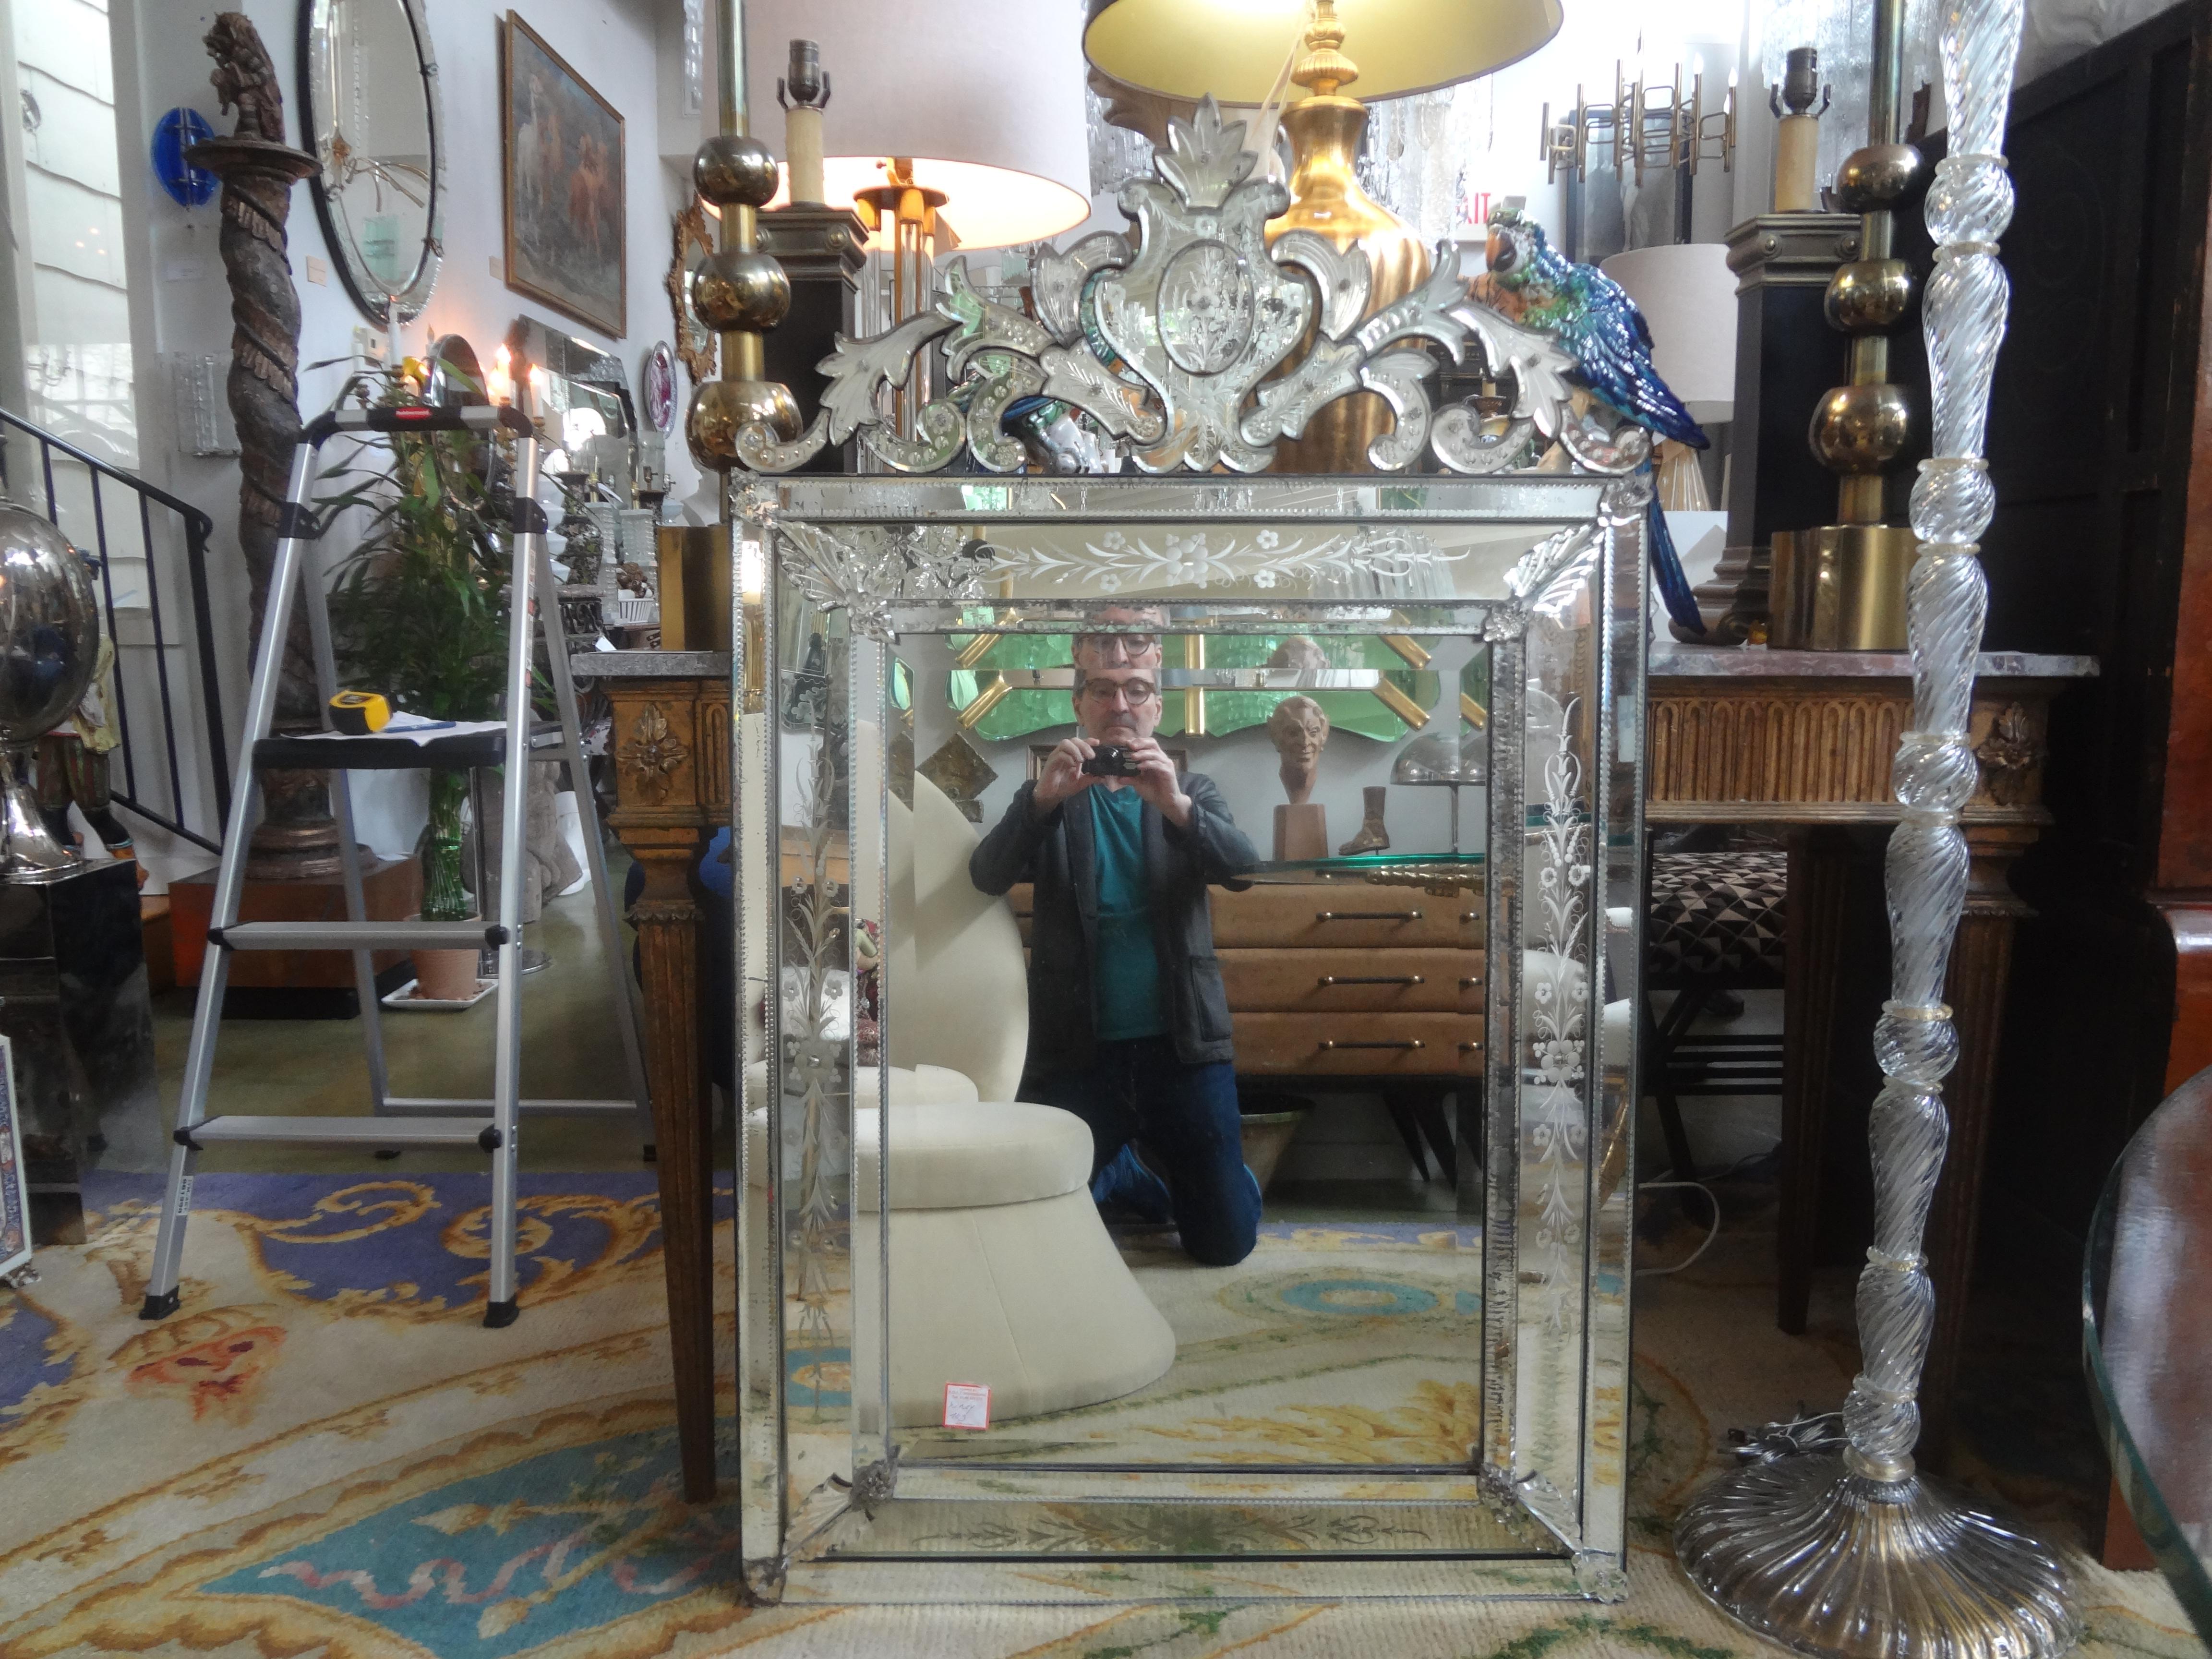 Grand miroir vénitien ancien gravé et biseauté
Superbe miroir vénitien rectangulaire gravé et biseauté de style baroque. Ce grand miroir vénitien ancien est en très bon état avec quelques rousseurs naturelles liées à l'âge. Ce miroir italien